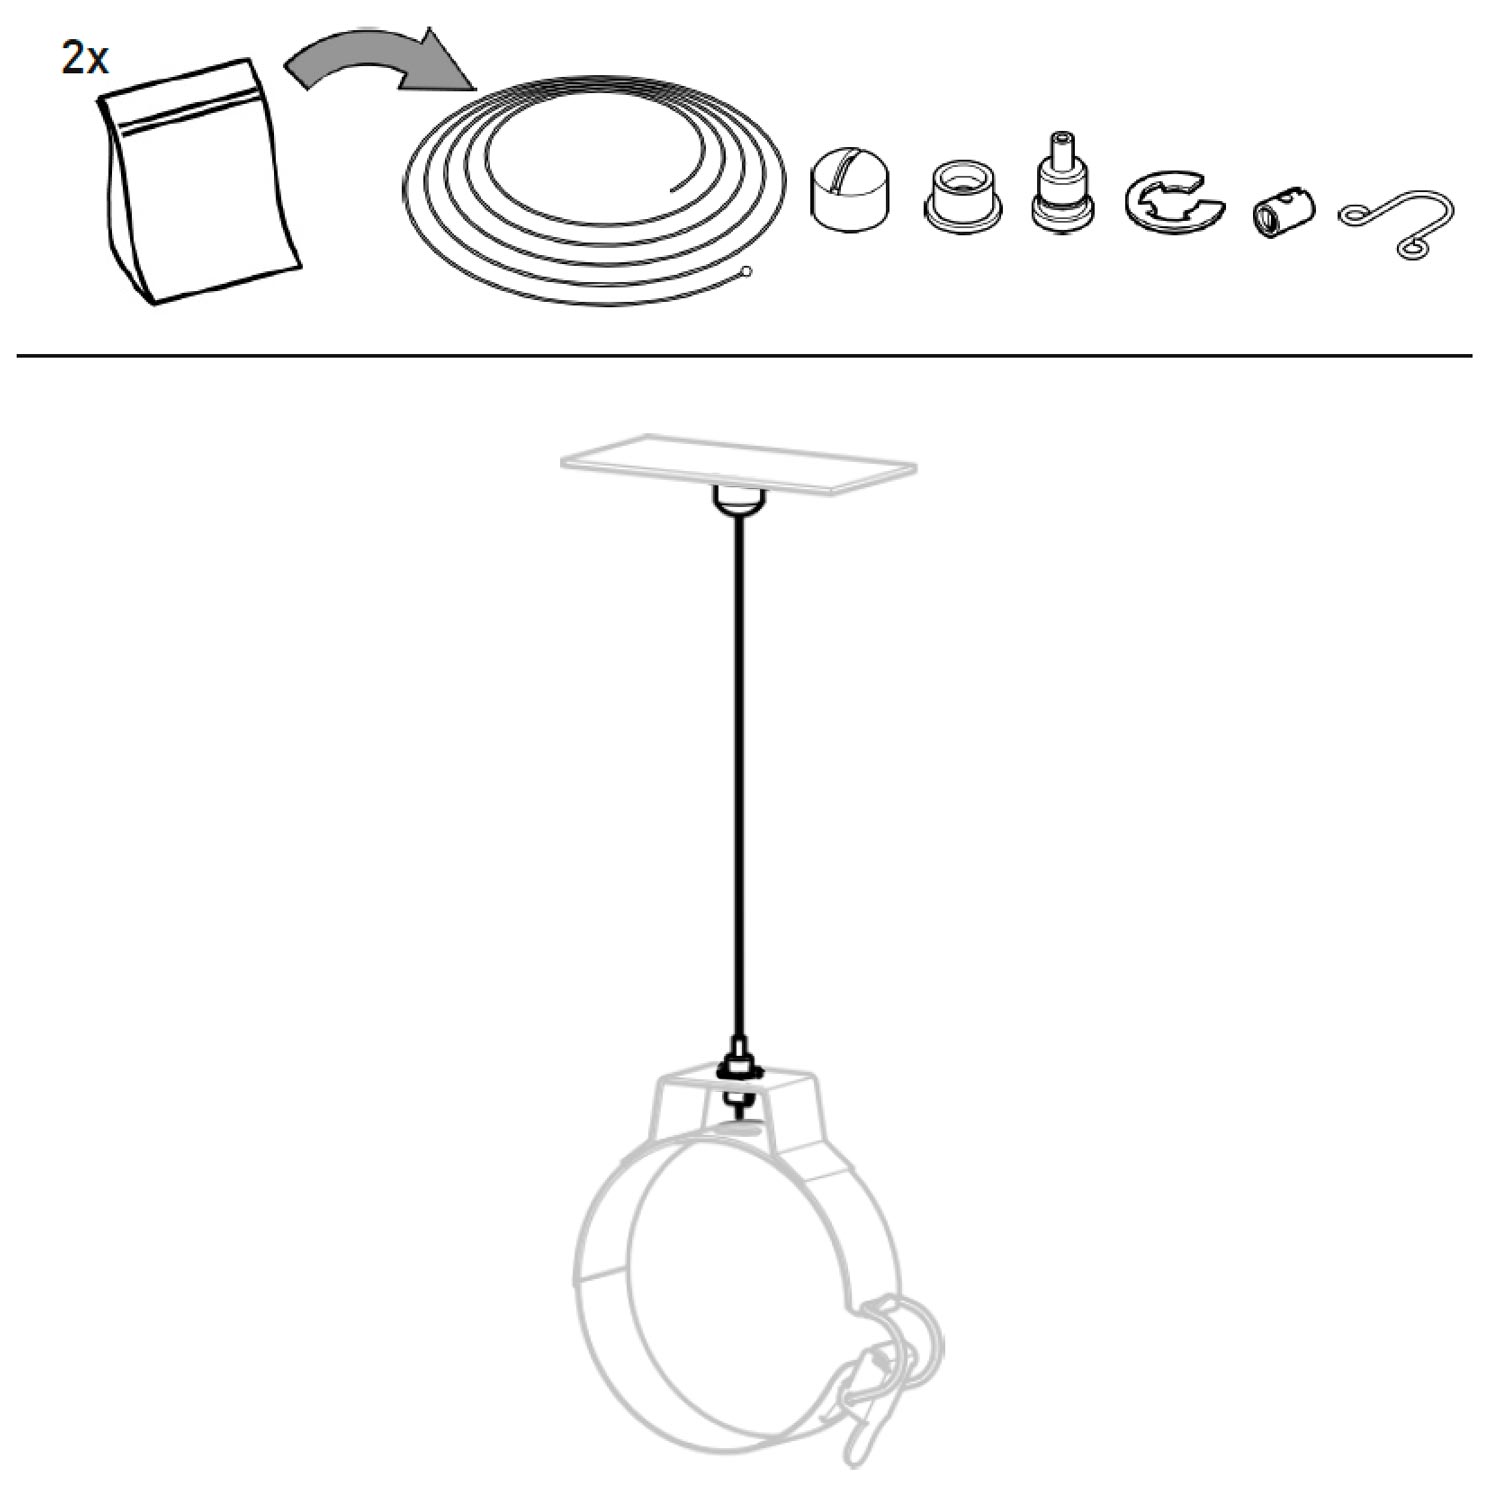 Glasröhren-Leuchte RIMBAUD, Ø 13 cm: Aufhängungs-Kit mit 2 x 300 cm Stahlseil im Lieferumfang